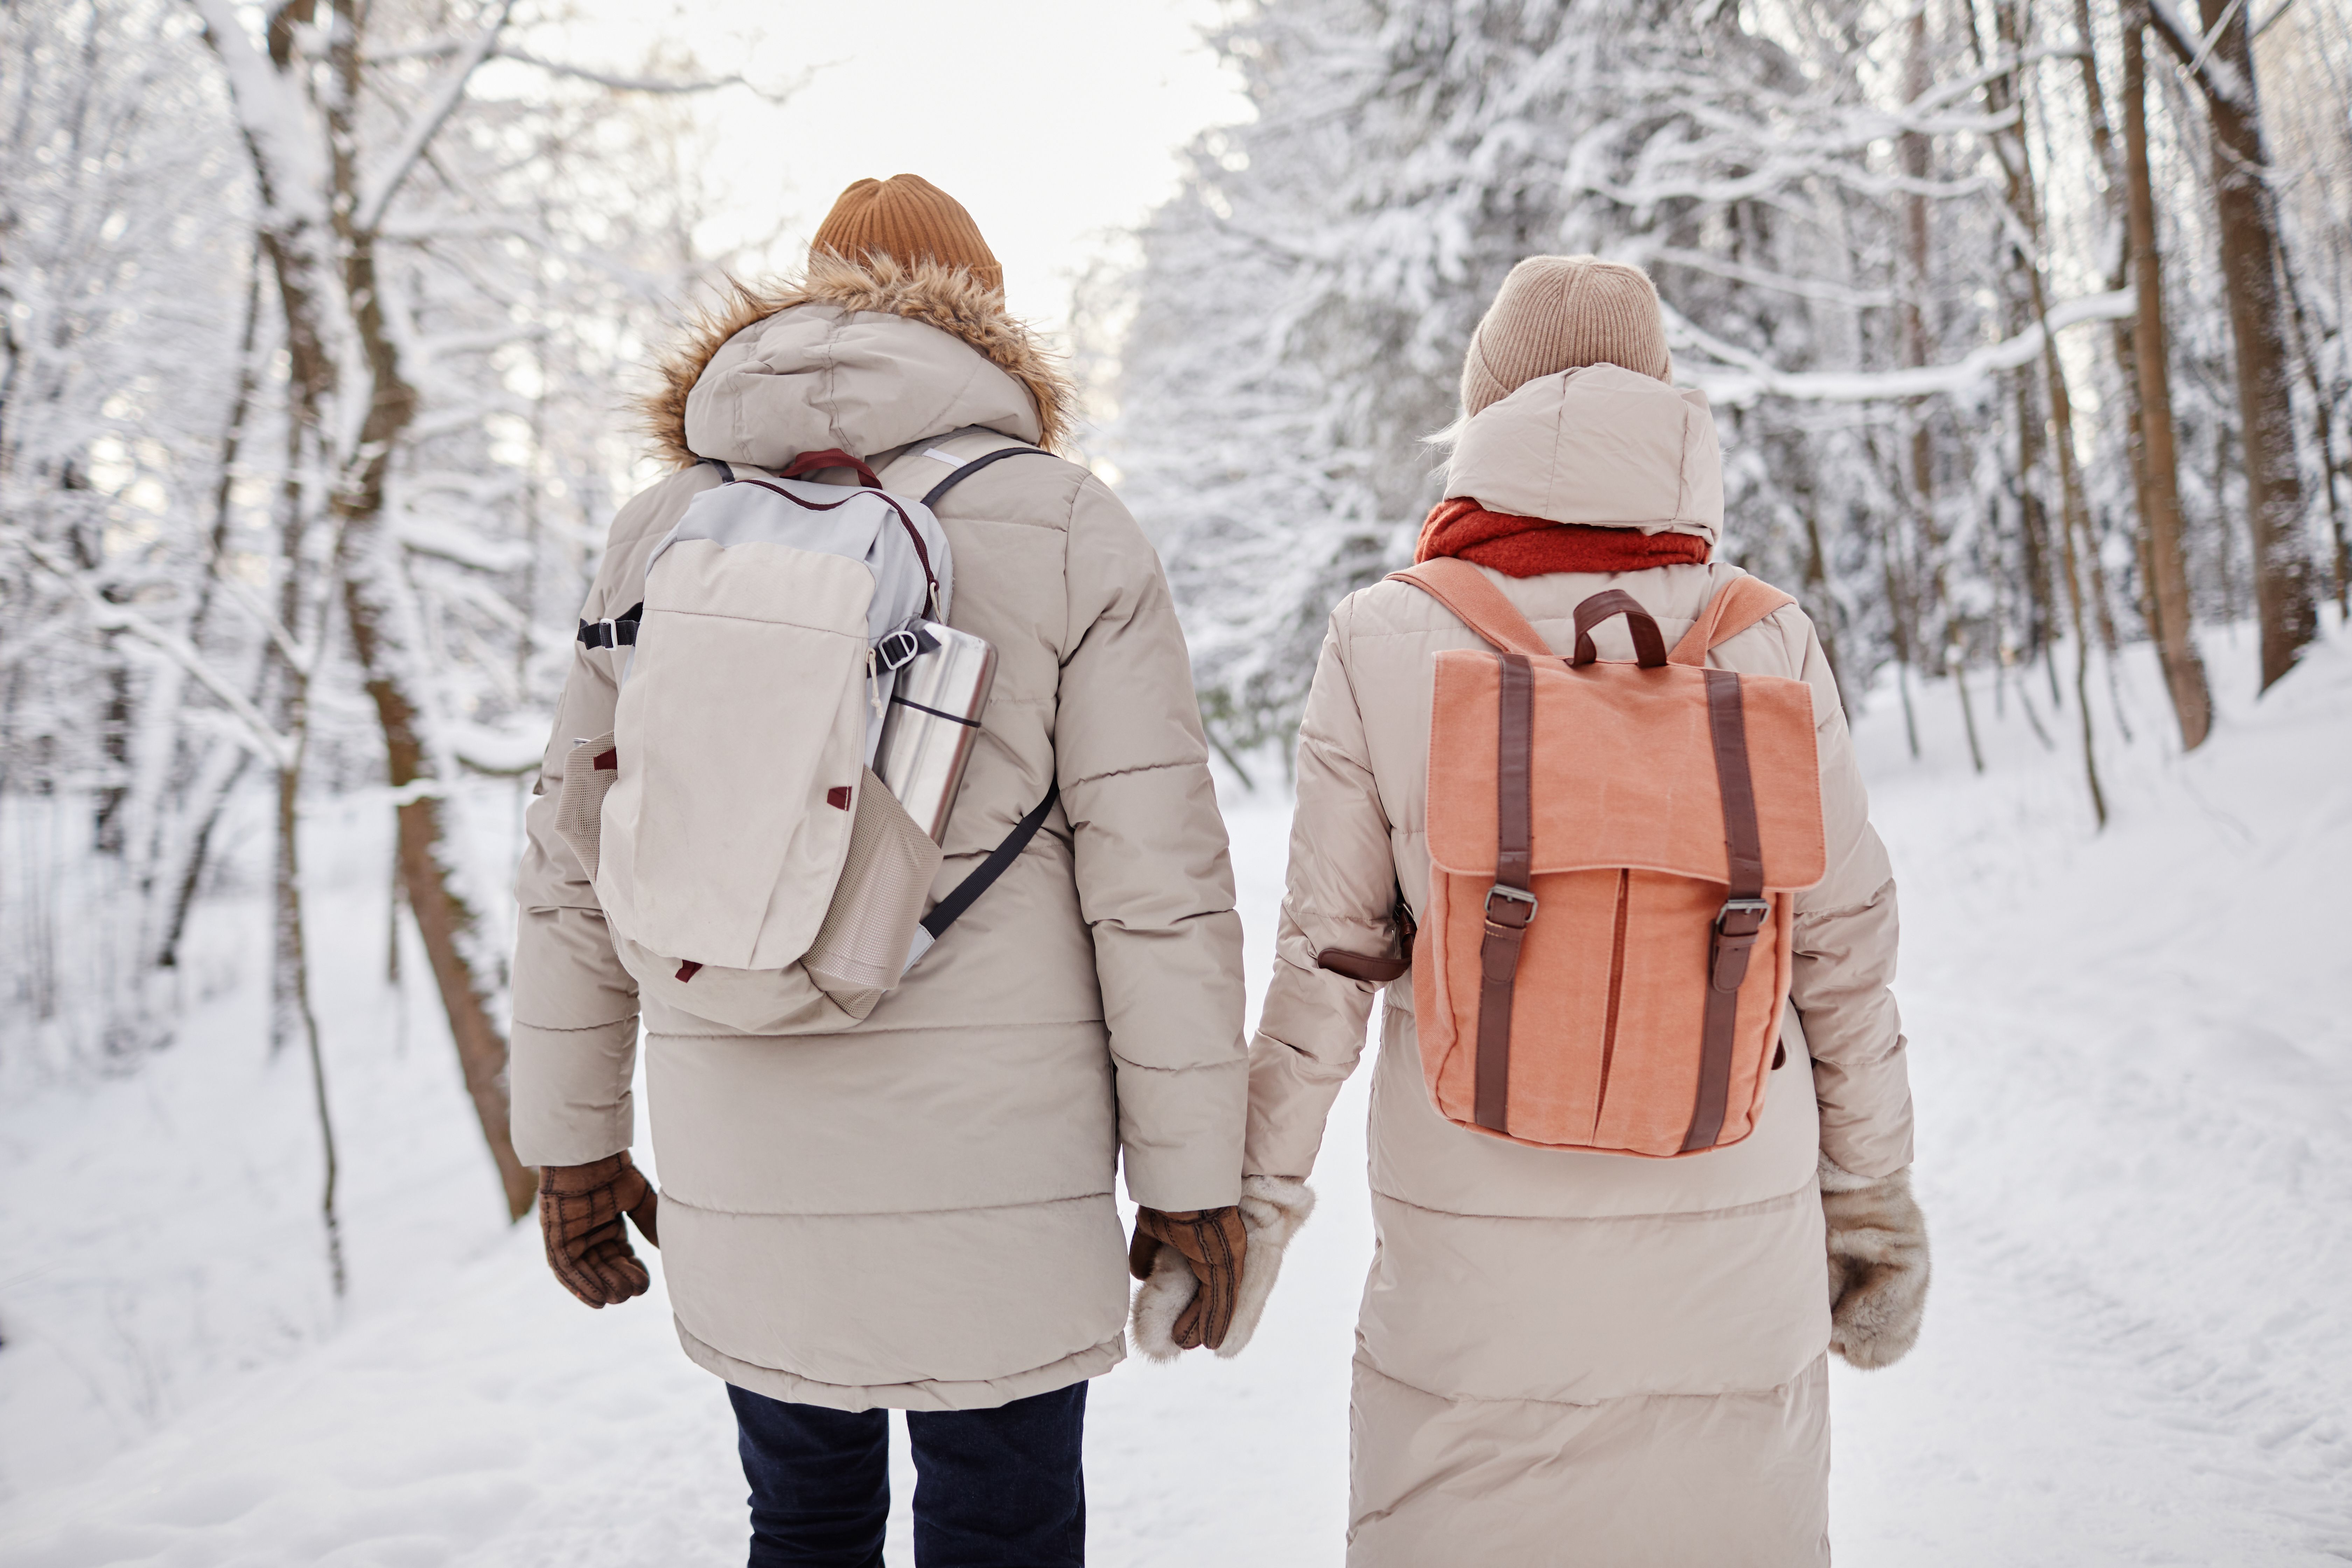 Estos son los beneficios de caminar por la nieve, según un nuevo estudio. Foto: Bigstock